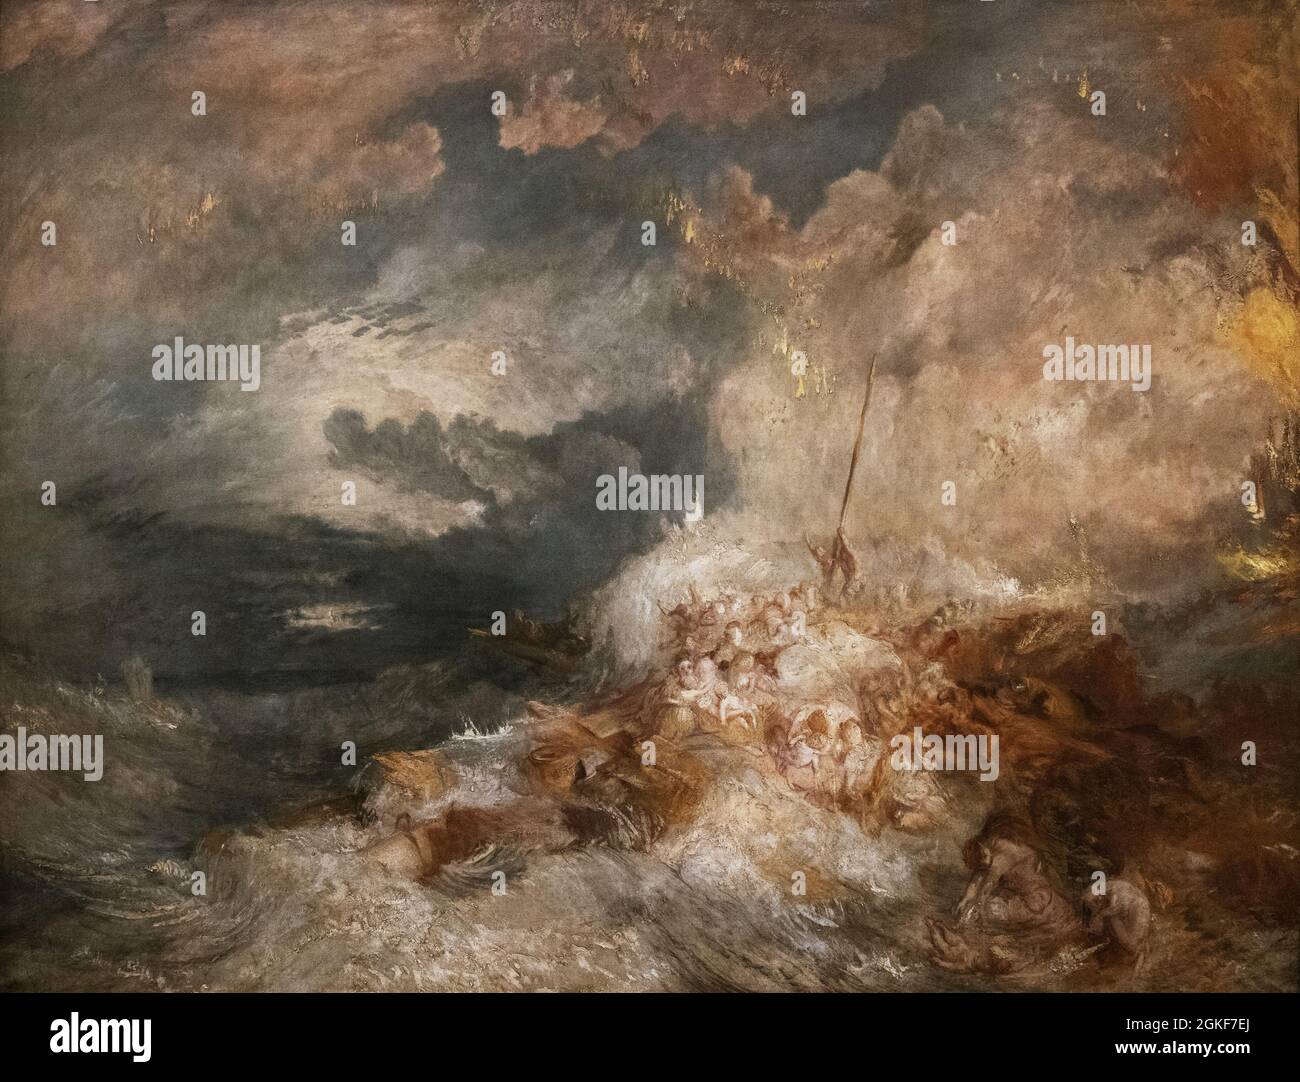 JMW Turner peinture 'Un désastre en mer' c. 1835 huile sur toile, peut-être inachevée mais peut représenter l'épave de l'Amphitrite en 1833; époque romantique. Banque D'Images